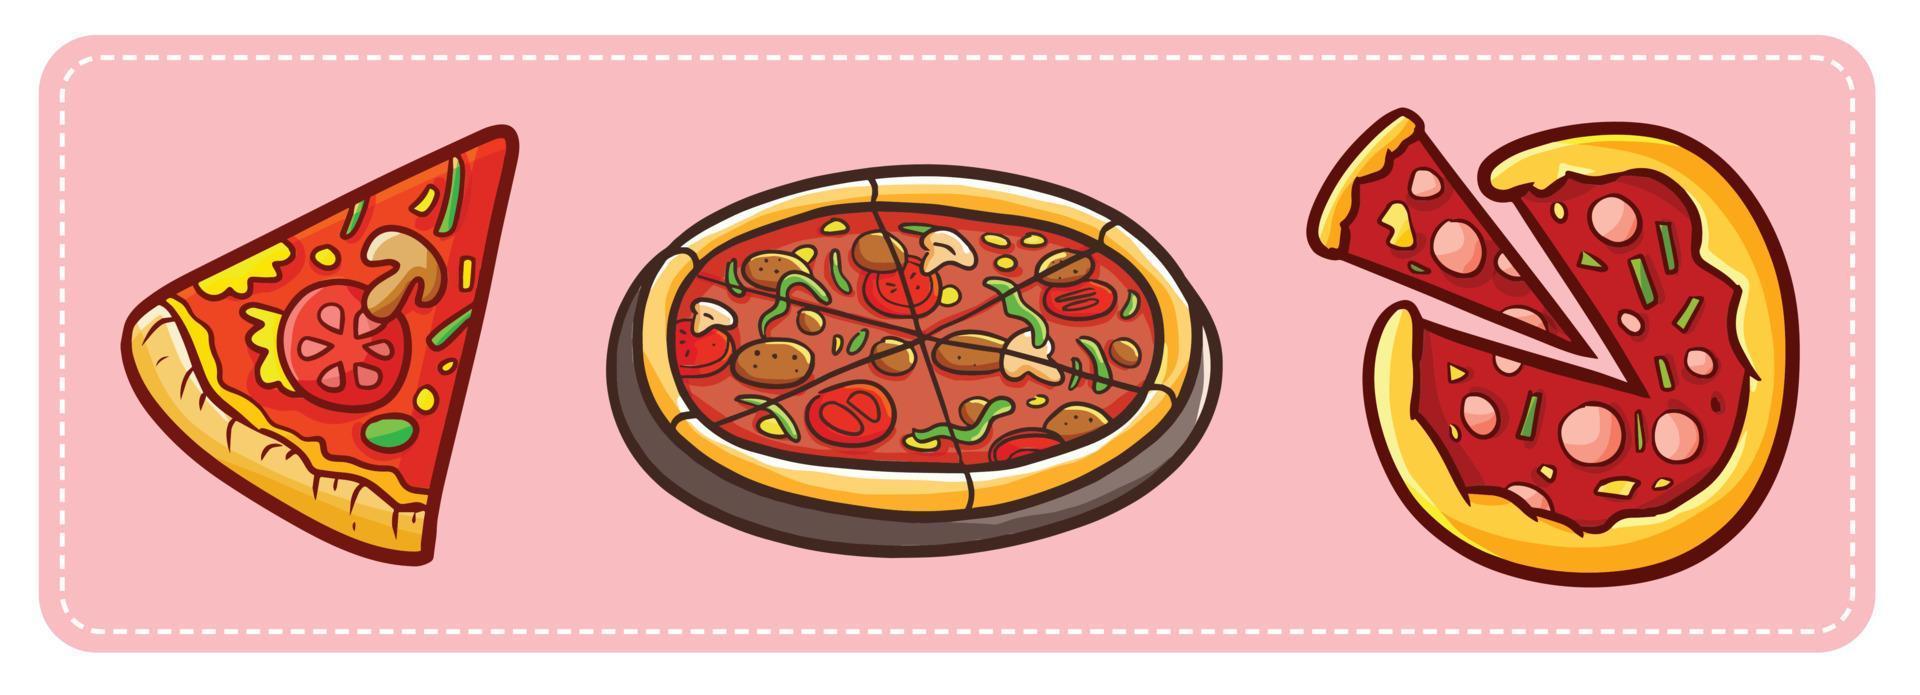 pizza dans un style cartoon drôle vecteur